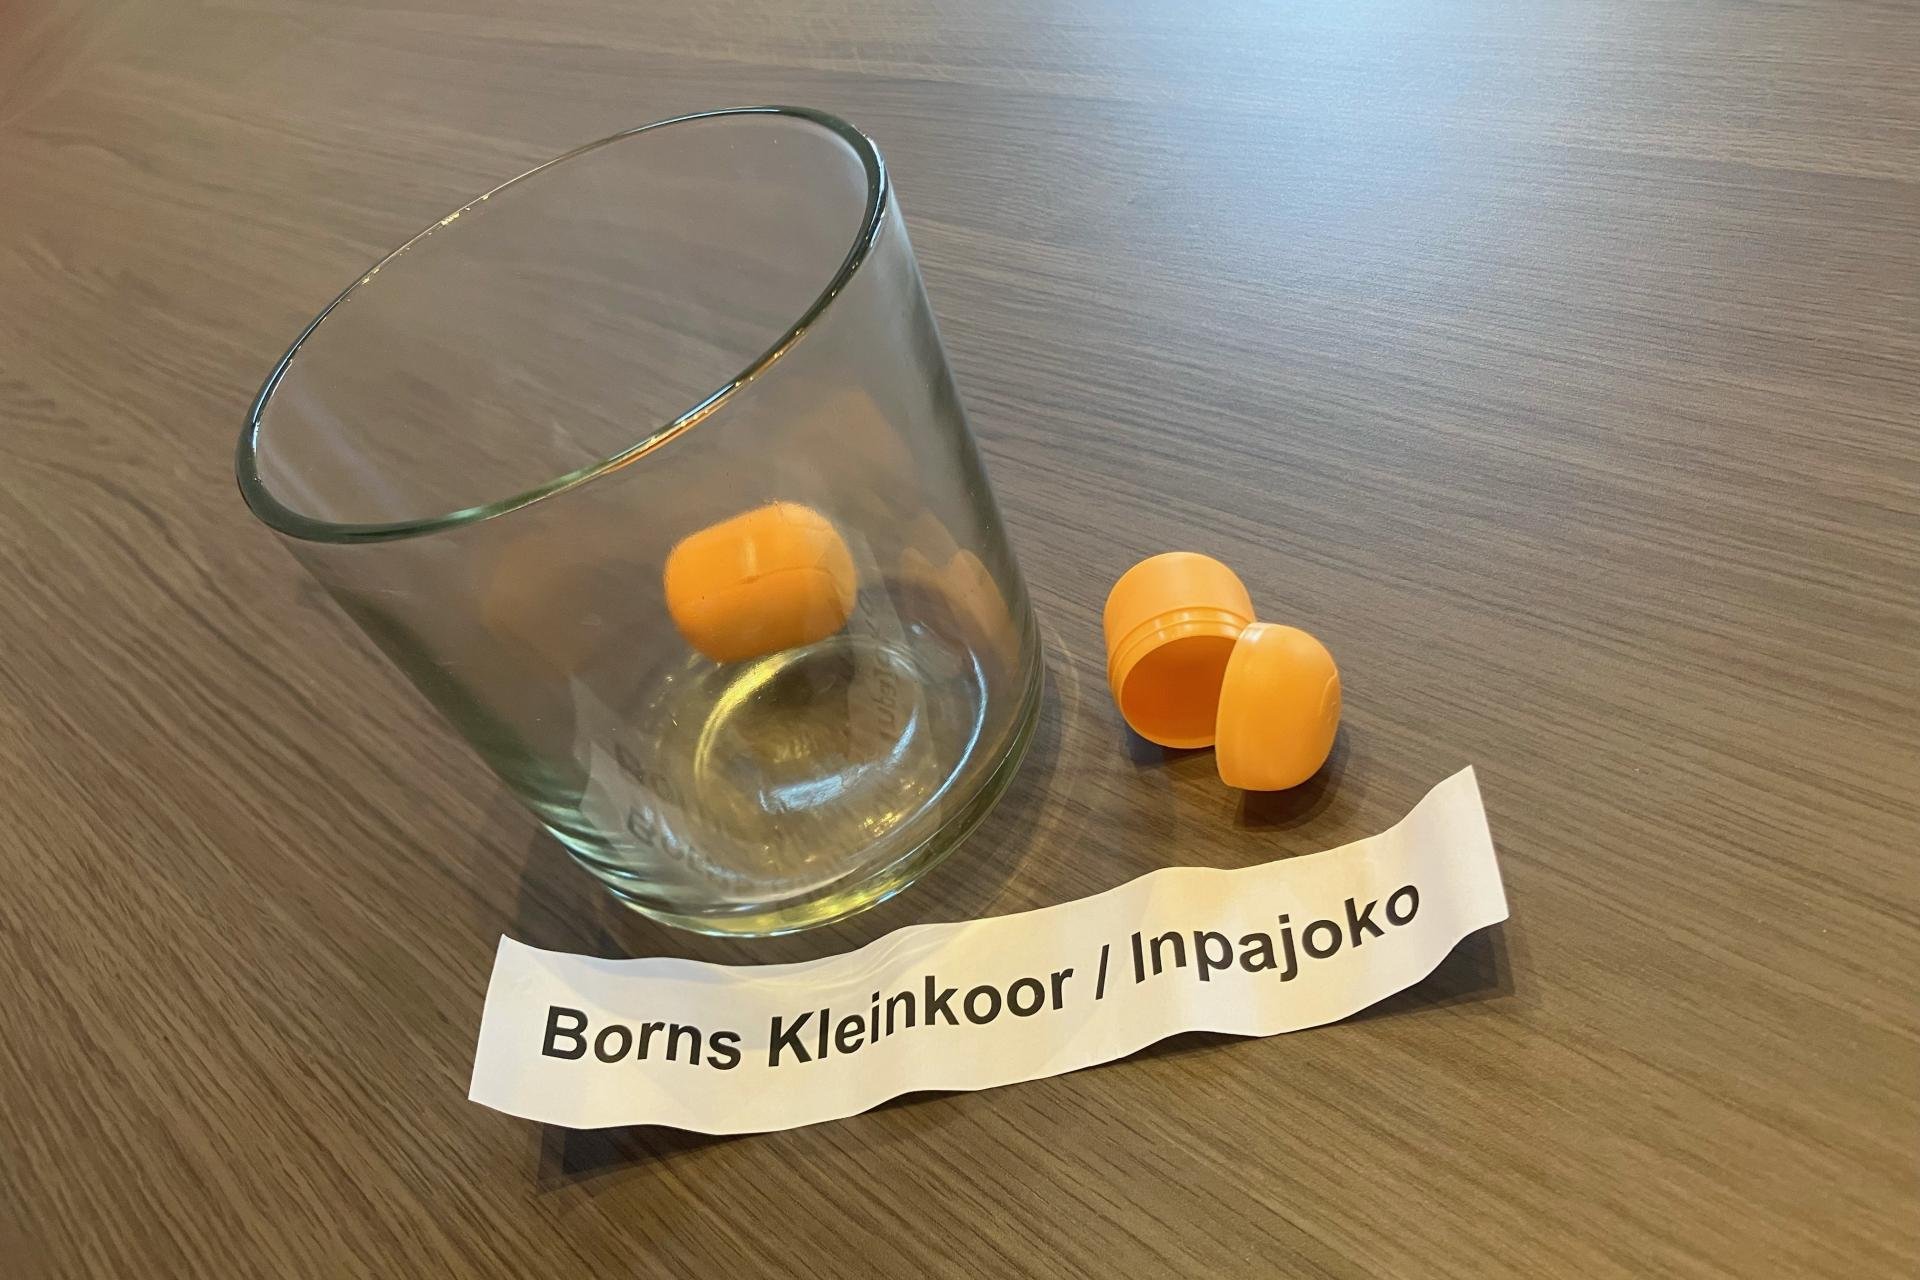 Glazen pot met lotingballen erin met papiertje 'Borns Kleinkoor / Inpajoke.